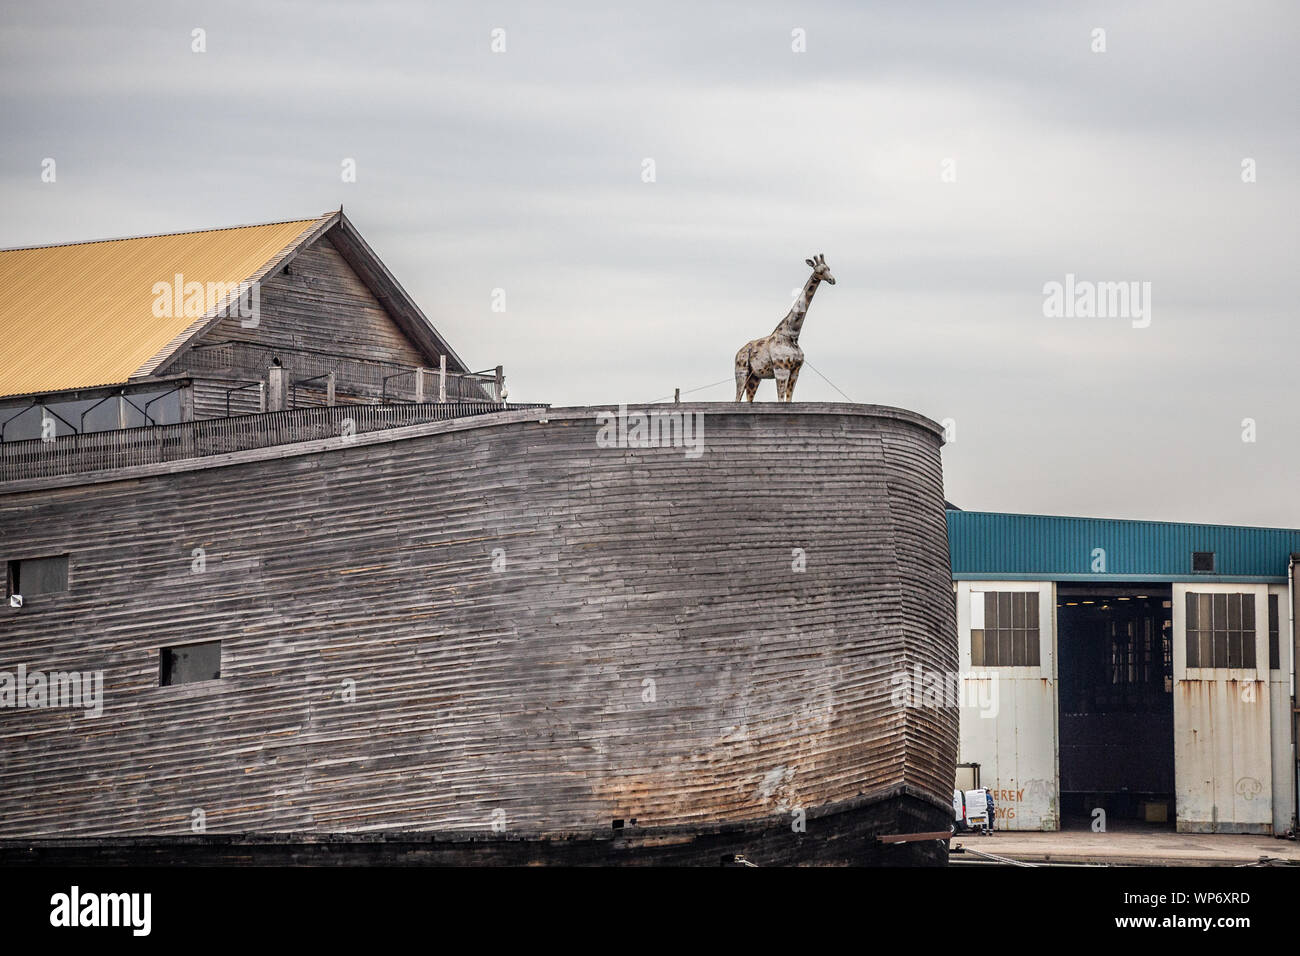 KRIMPEN AAN DE IJSSEL, Niederlande - September 3, 2018: Blick auf die Arche Noah Replik entlang des Flusses in der Niederlande gesehen. Stockfoto